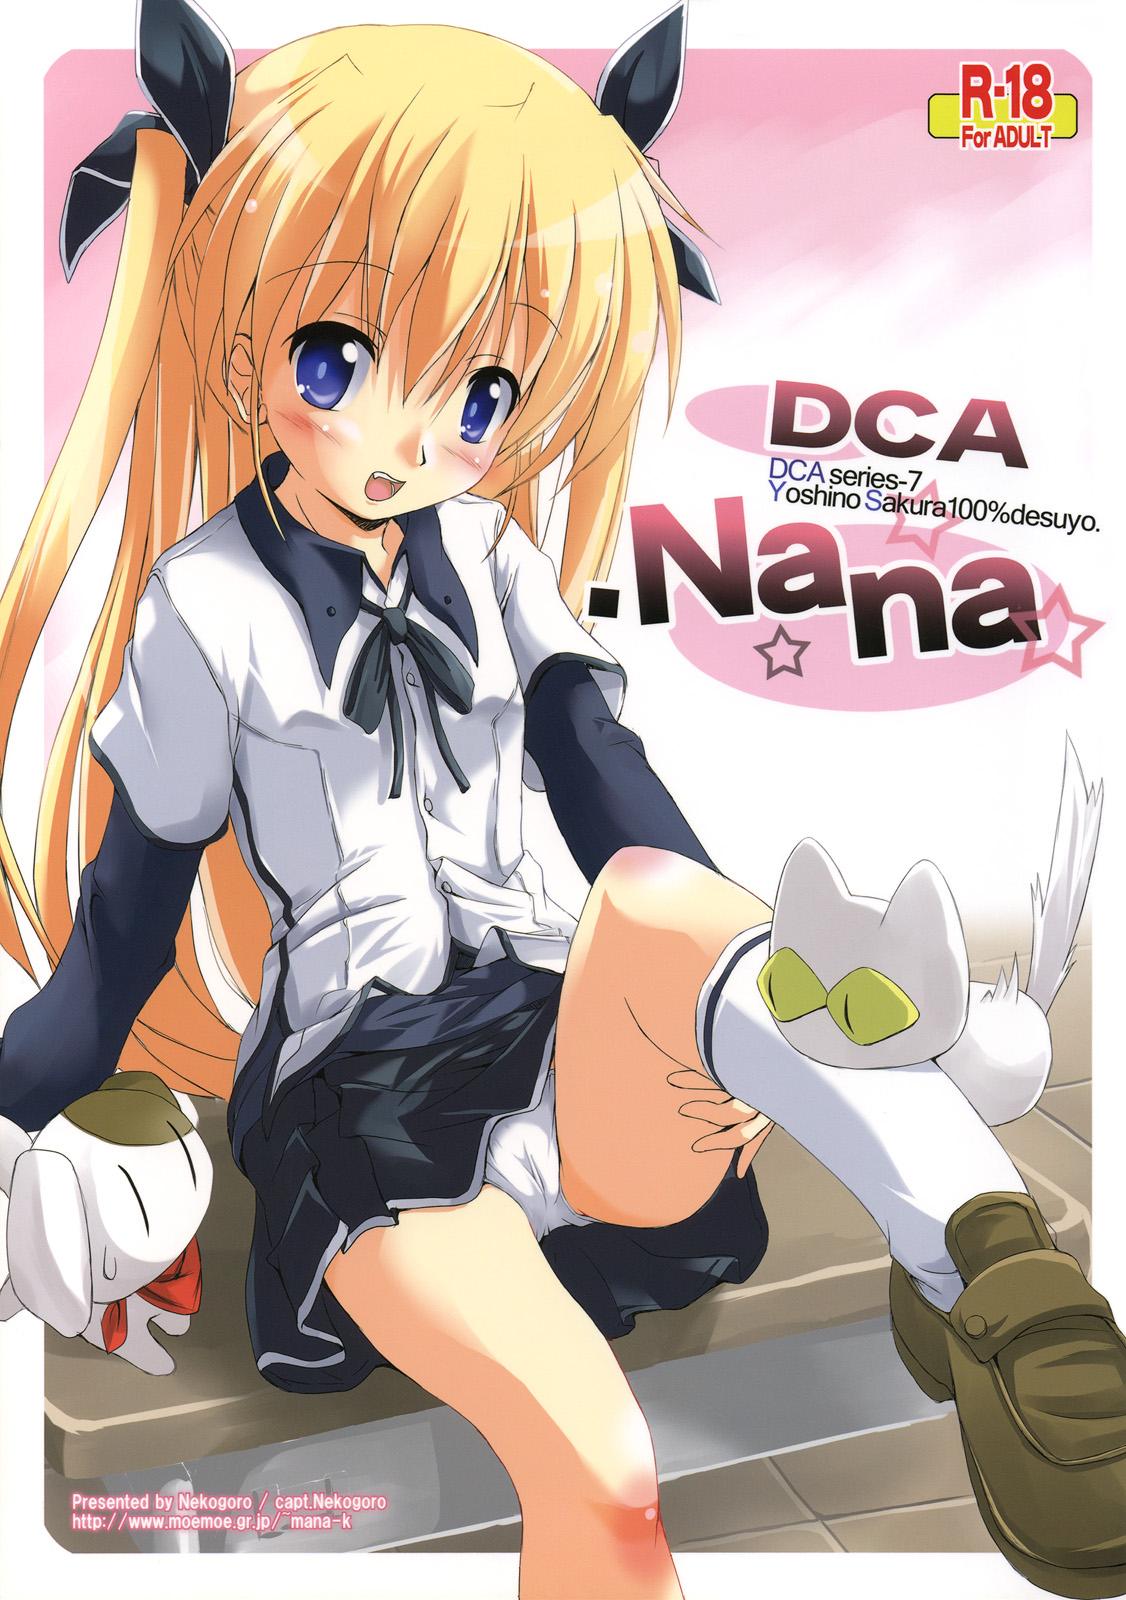 (COMIC1☆3) [Nekogoro (capt.Nekogoro)] DCA.NANA -DCA series-7 Yoshino Sakura 100% desuyo.- (Da Capo) 0